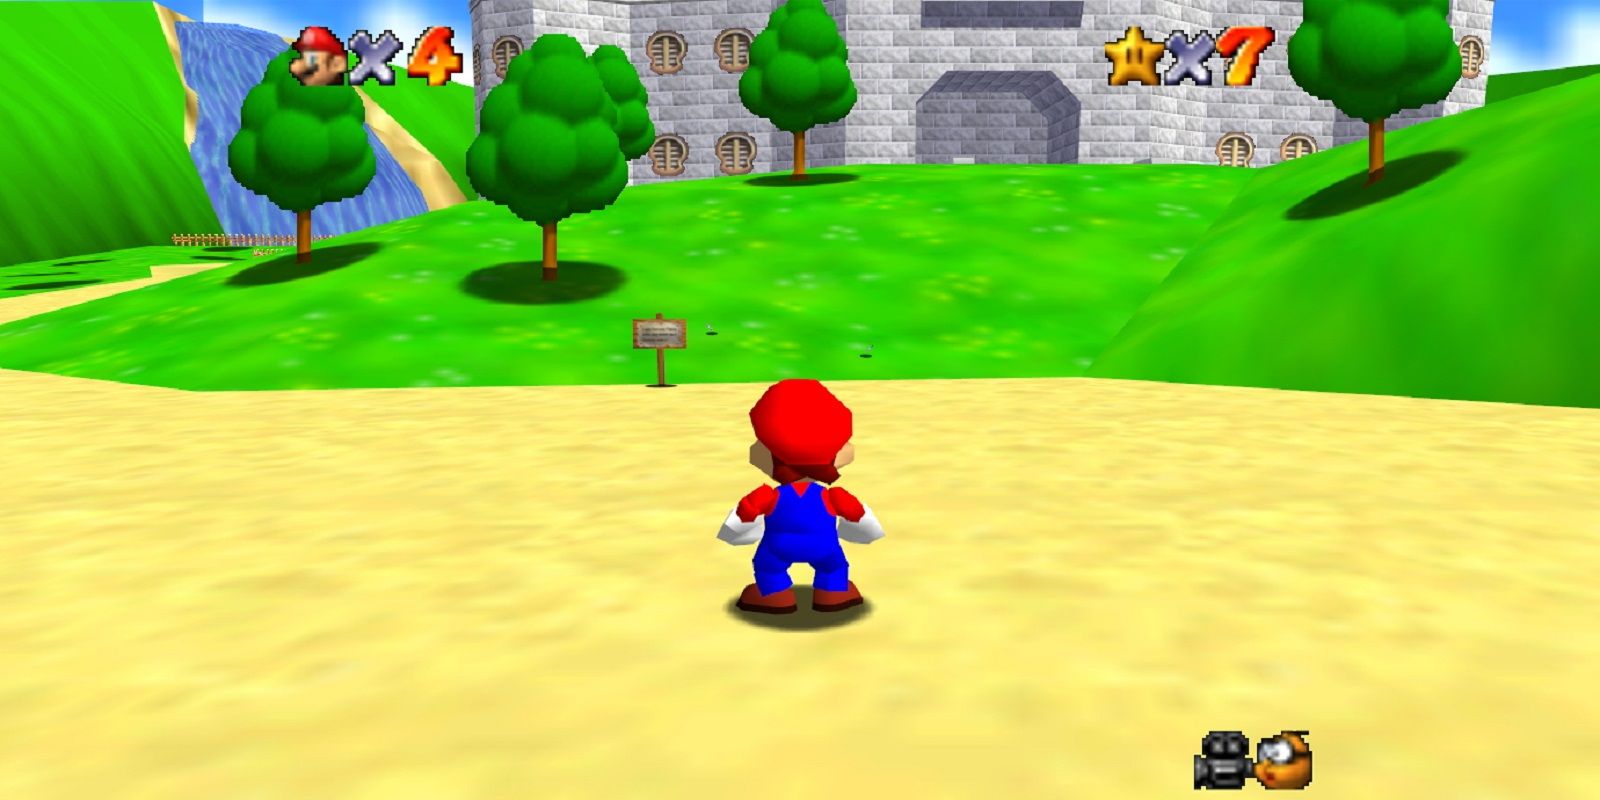 Mario in Super Mario 64